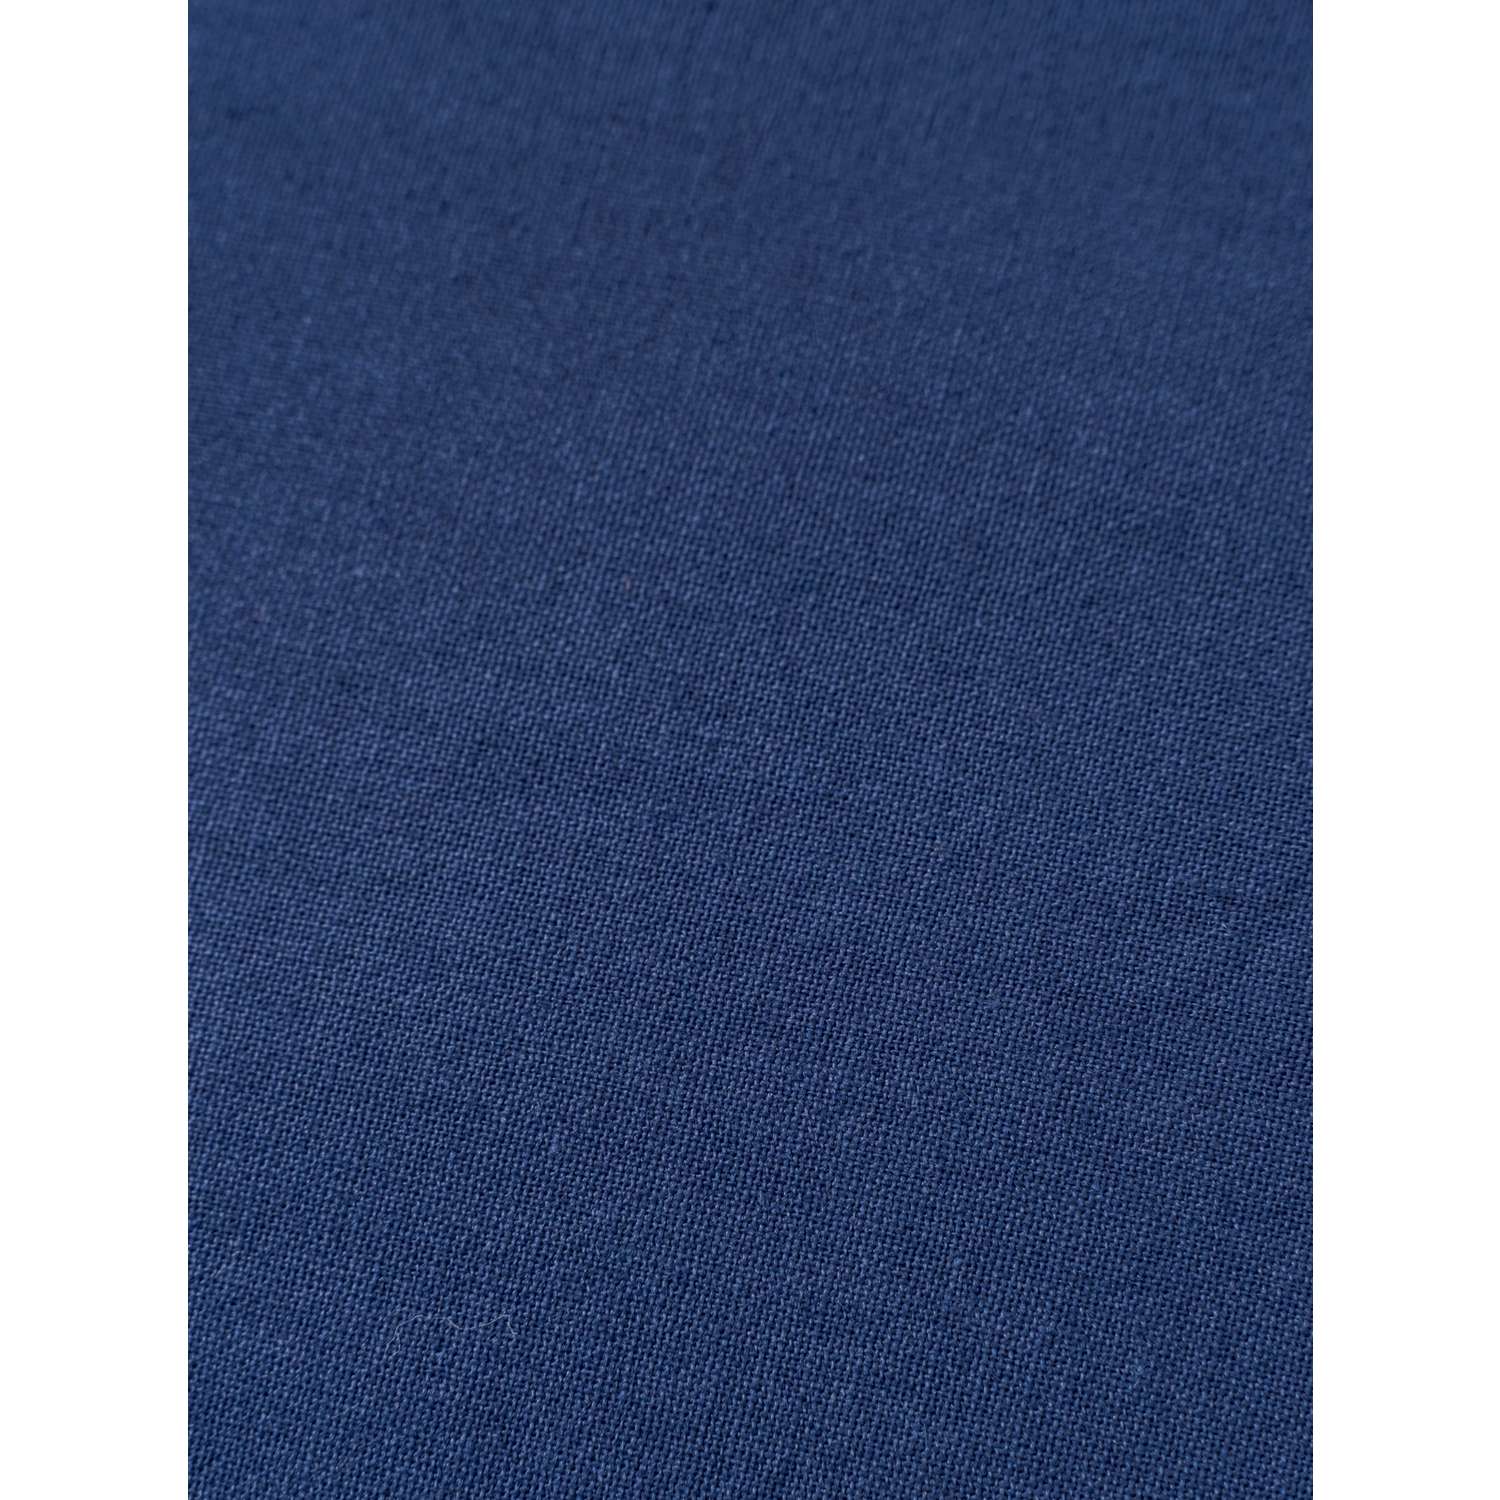 Комплект постельного белья IDEASON Поплин 3 предмета 2.0 спальный темно-синий - фото 9